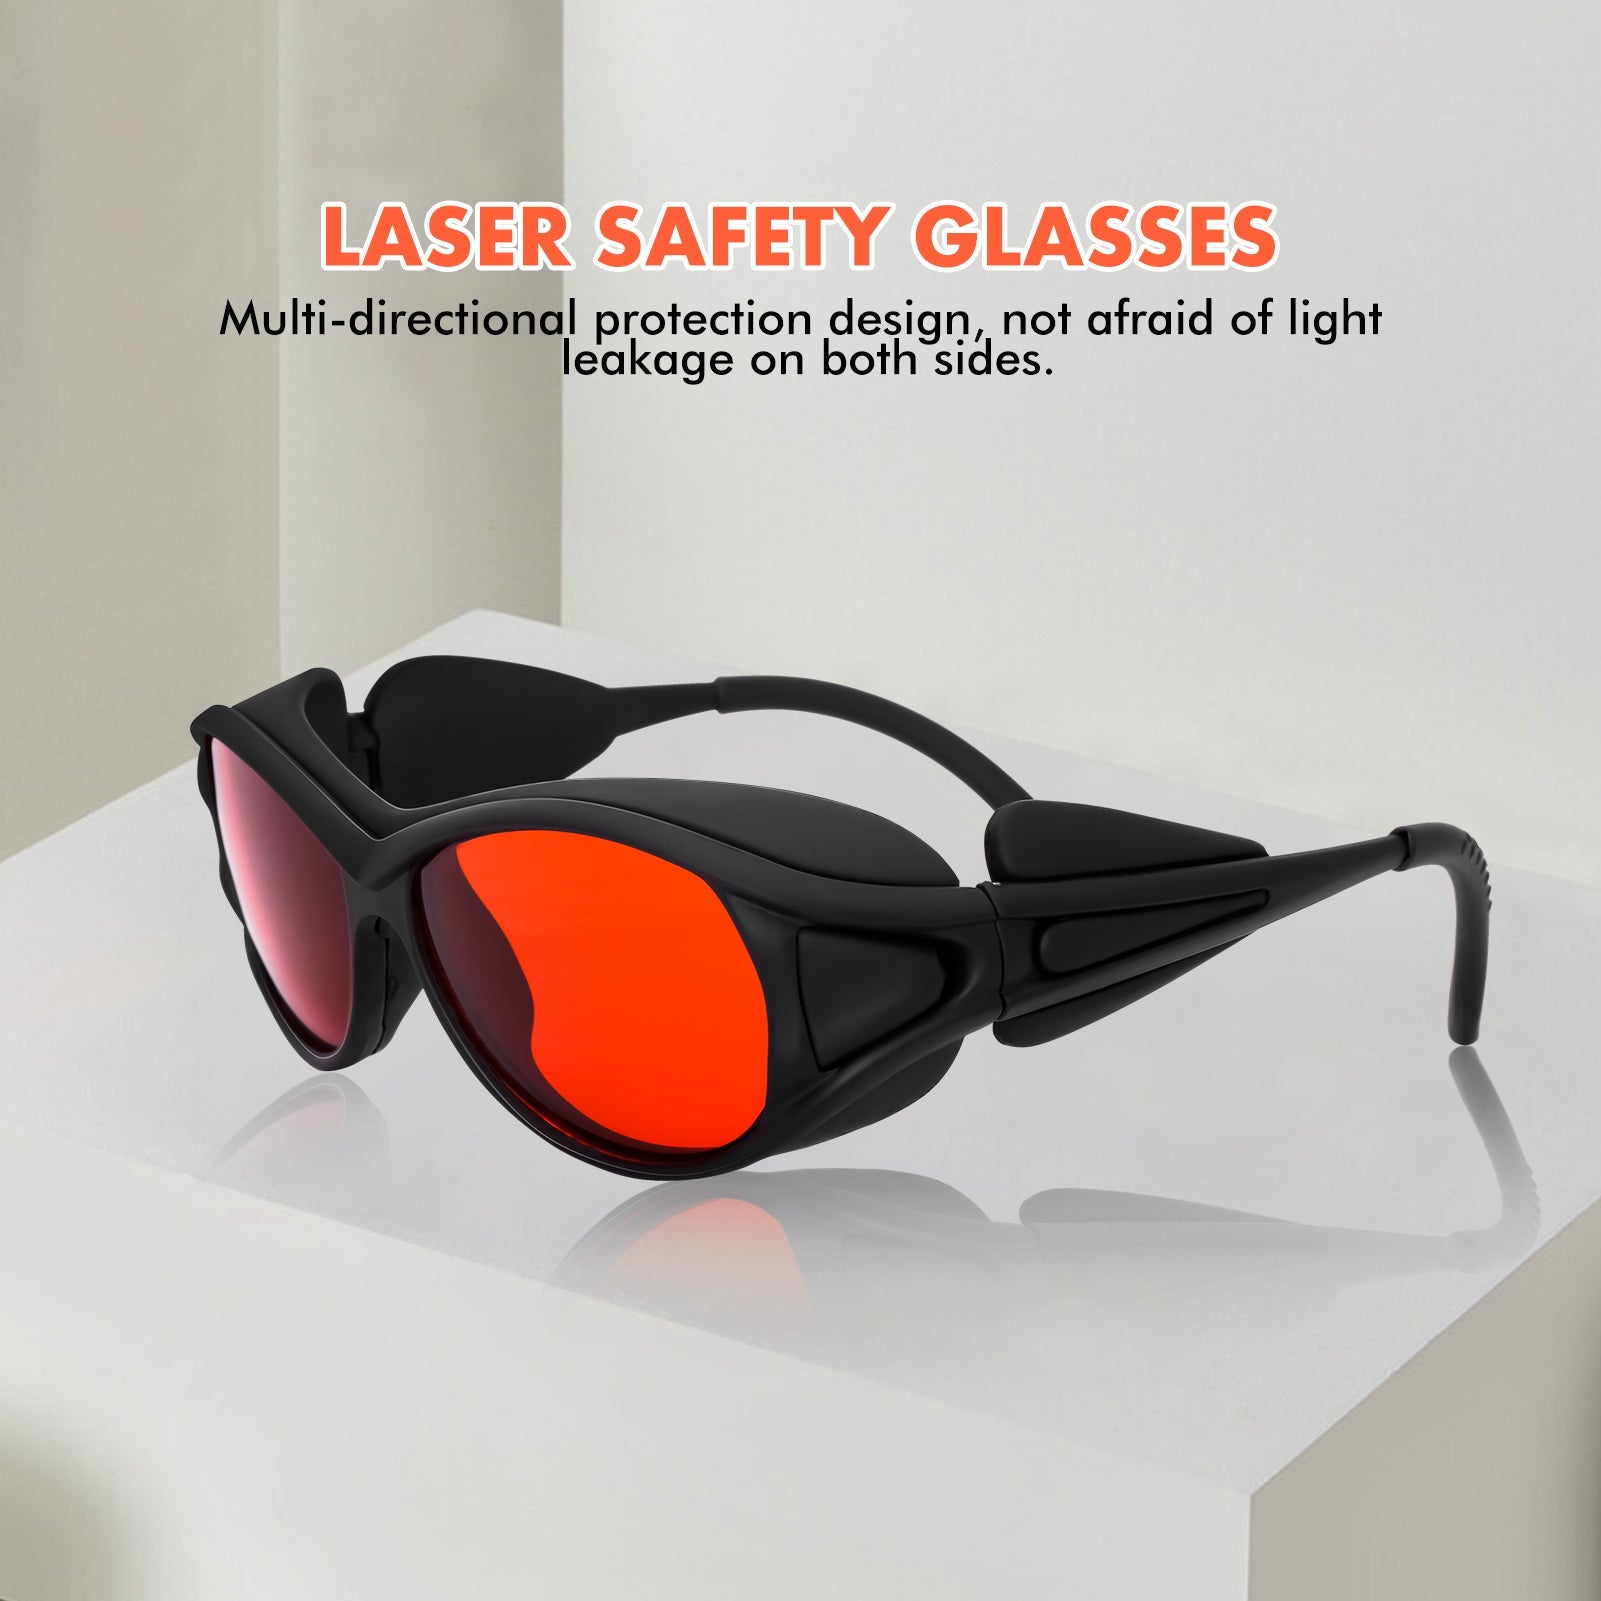 Lunettes de Protection de sécurité Laser, Protection multidirectionnelle à longueur d'onde 190-540nm